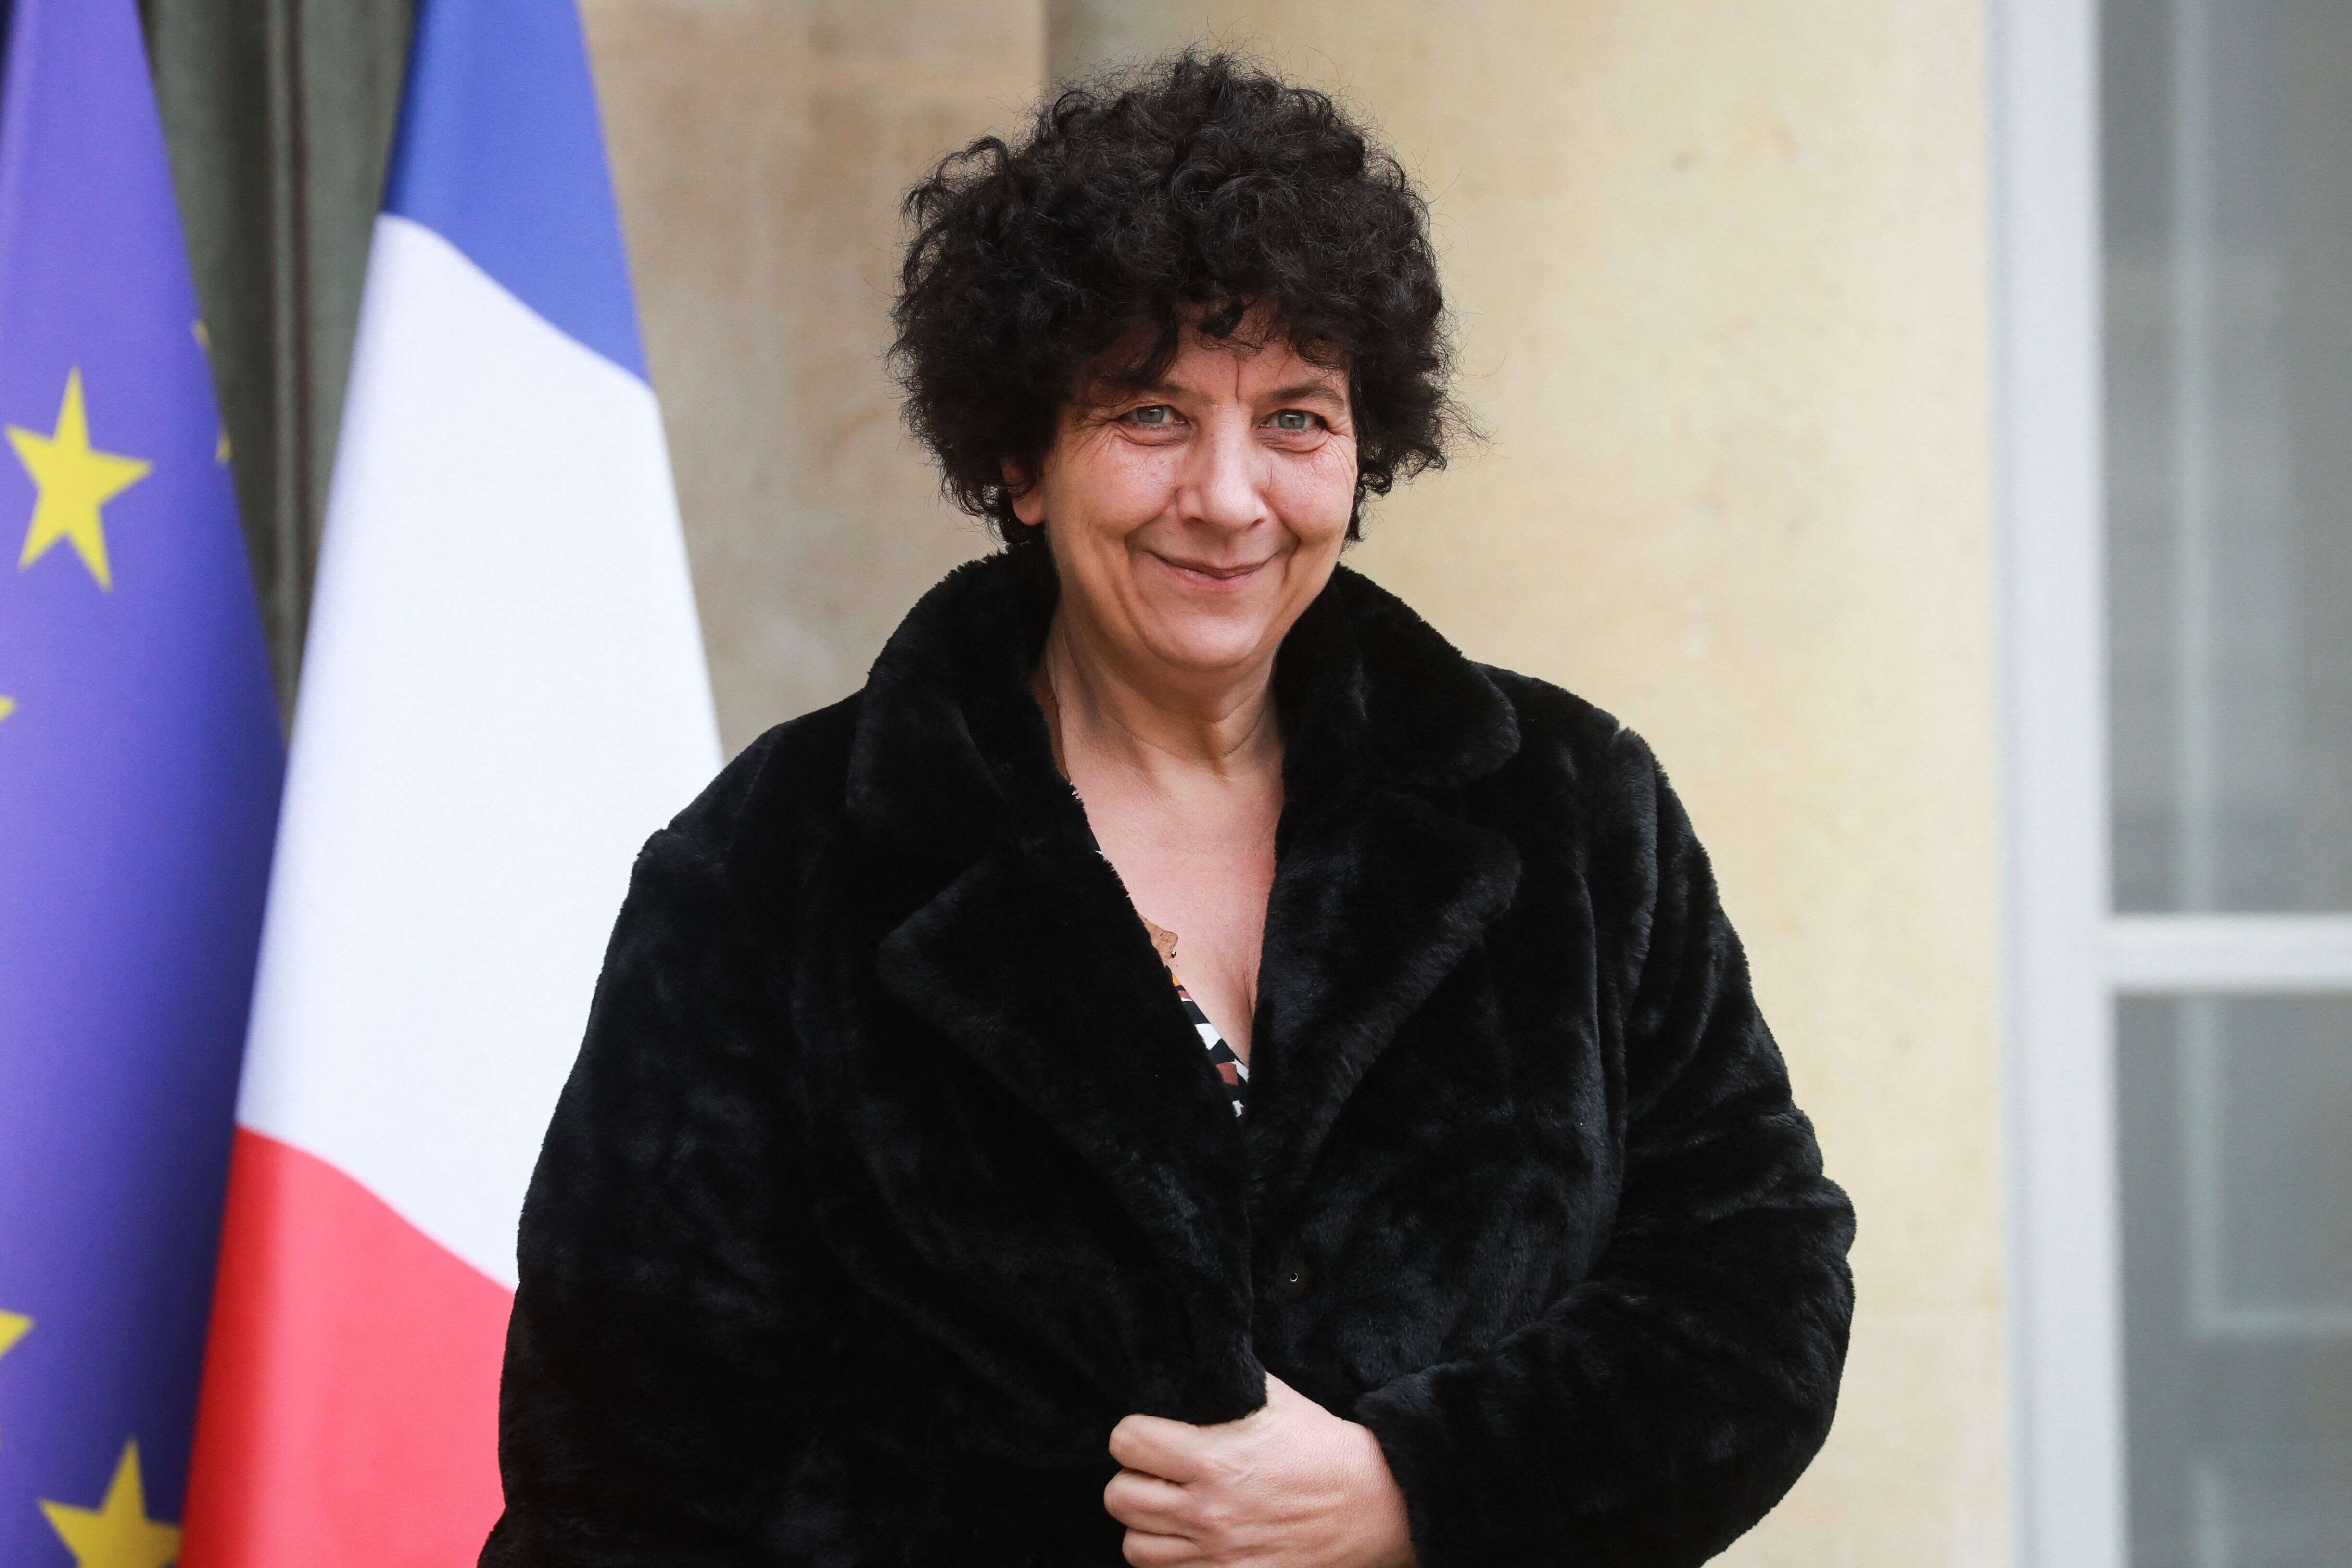 La ministre de l'Enseignement supérieur, de la recherche et de l'innovation, Frédérique Vidal,  le 4 mars 2020. (LUDOVIC MARIN / AFP)